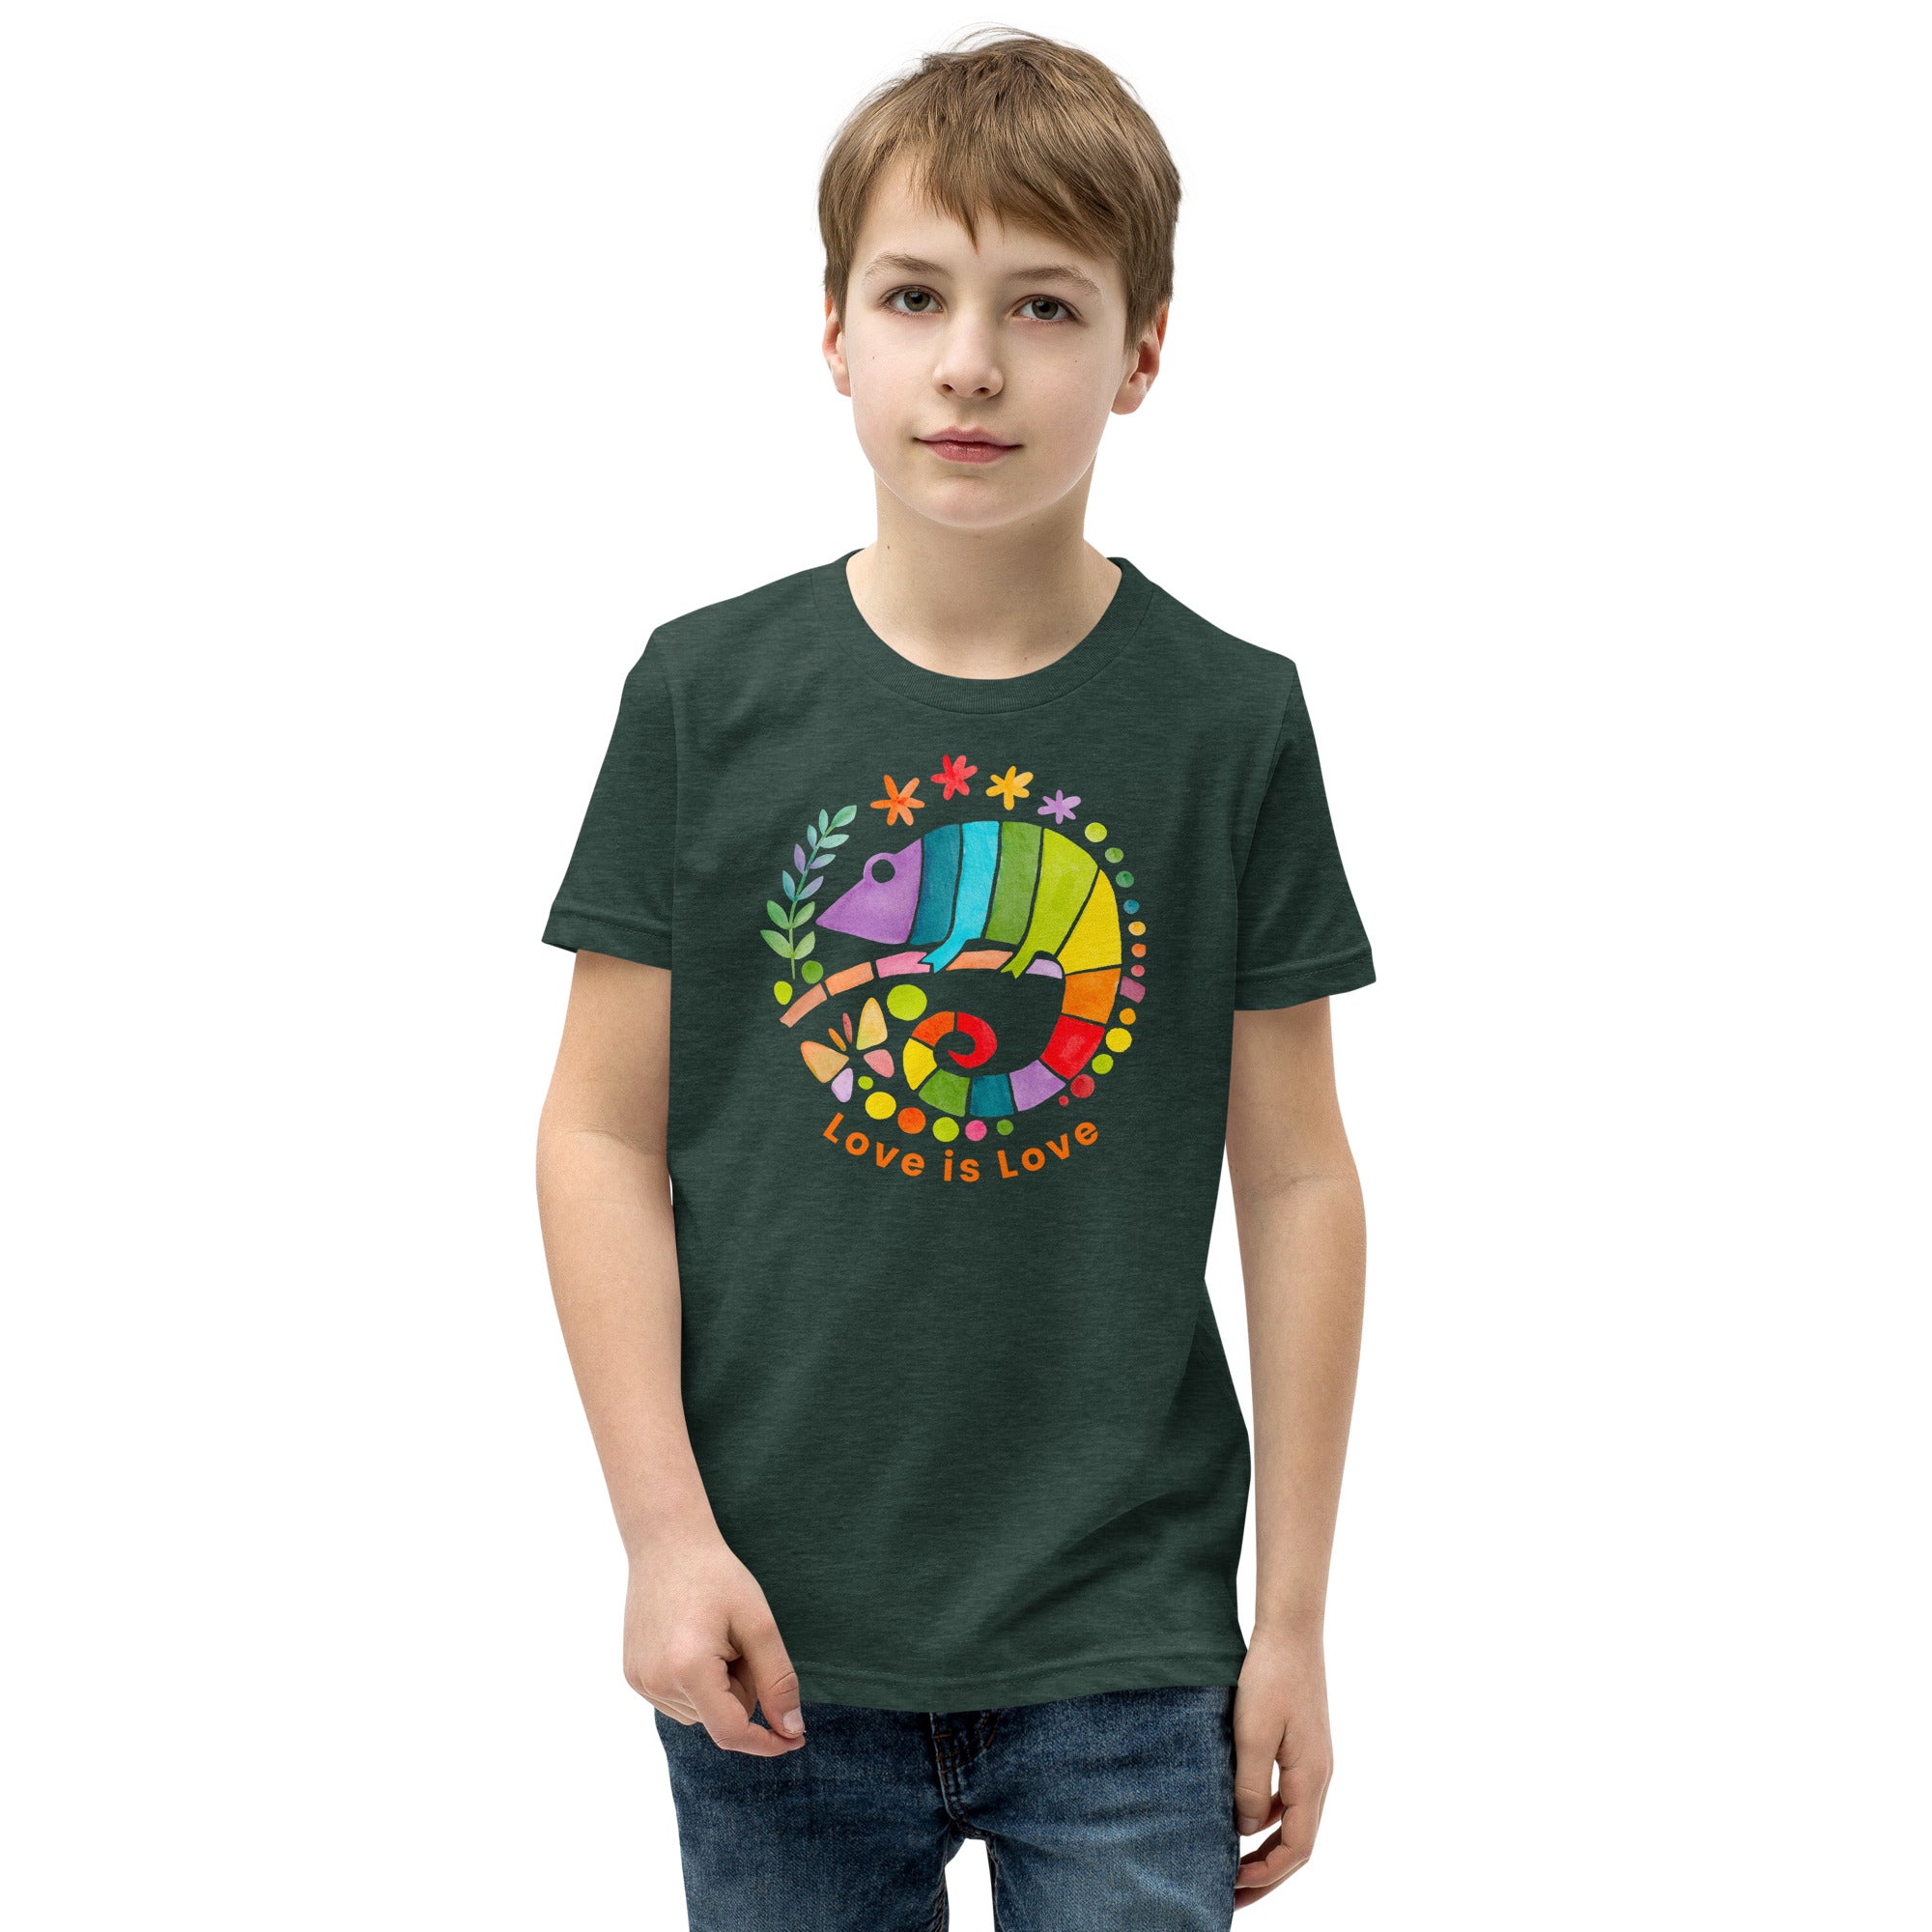 Chameleon Love - Youth Short Sleeve T-Shirt